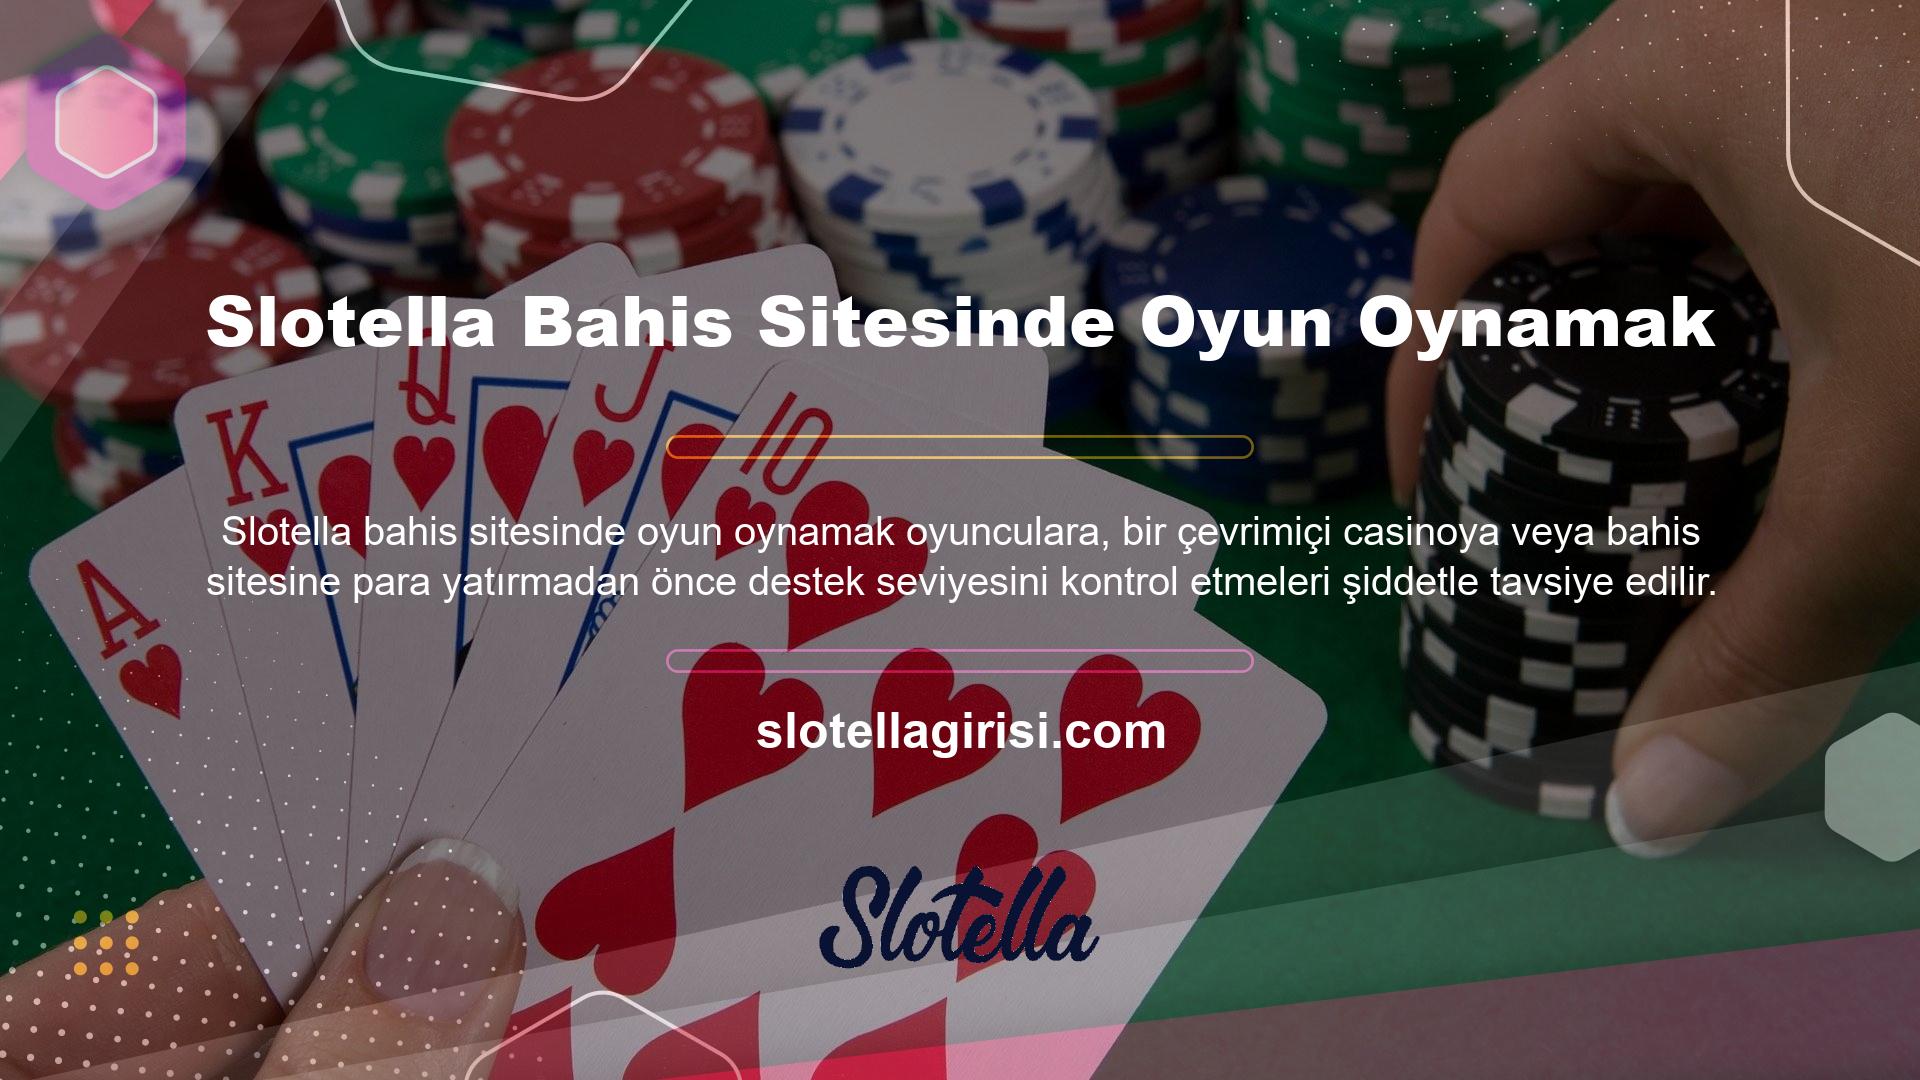 Slotella web sitesindeki ücretsiz slotları da deneyebilirsiniz